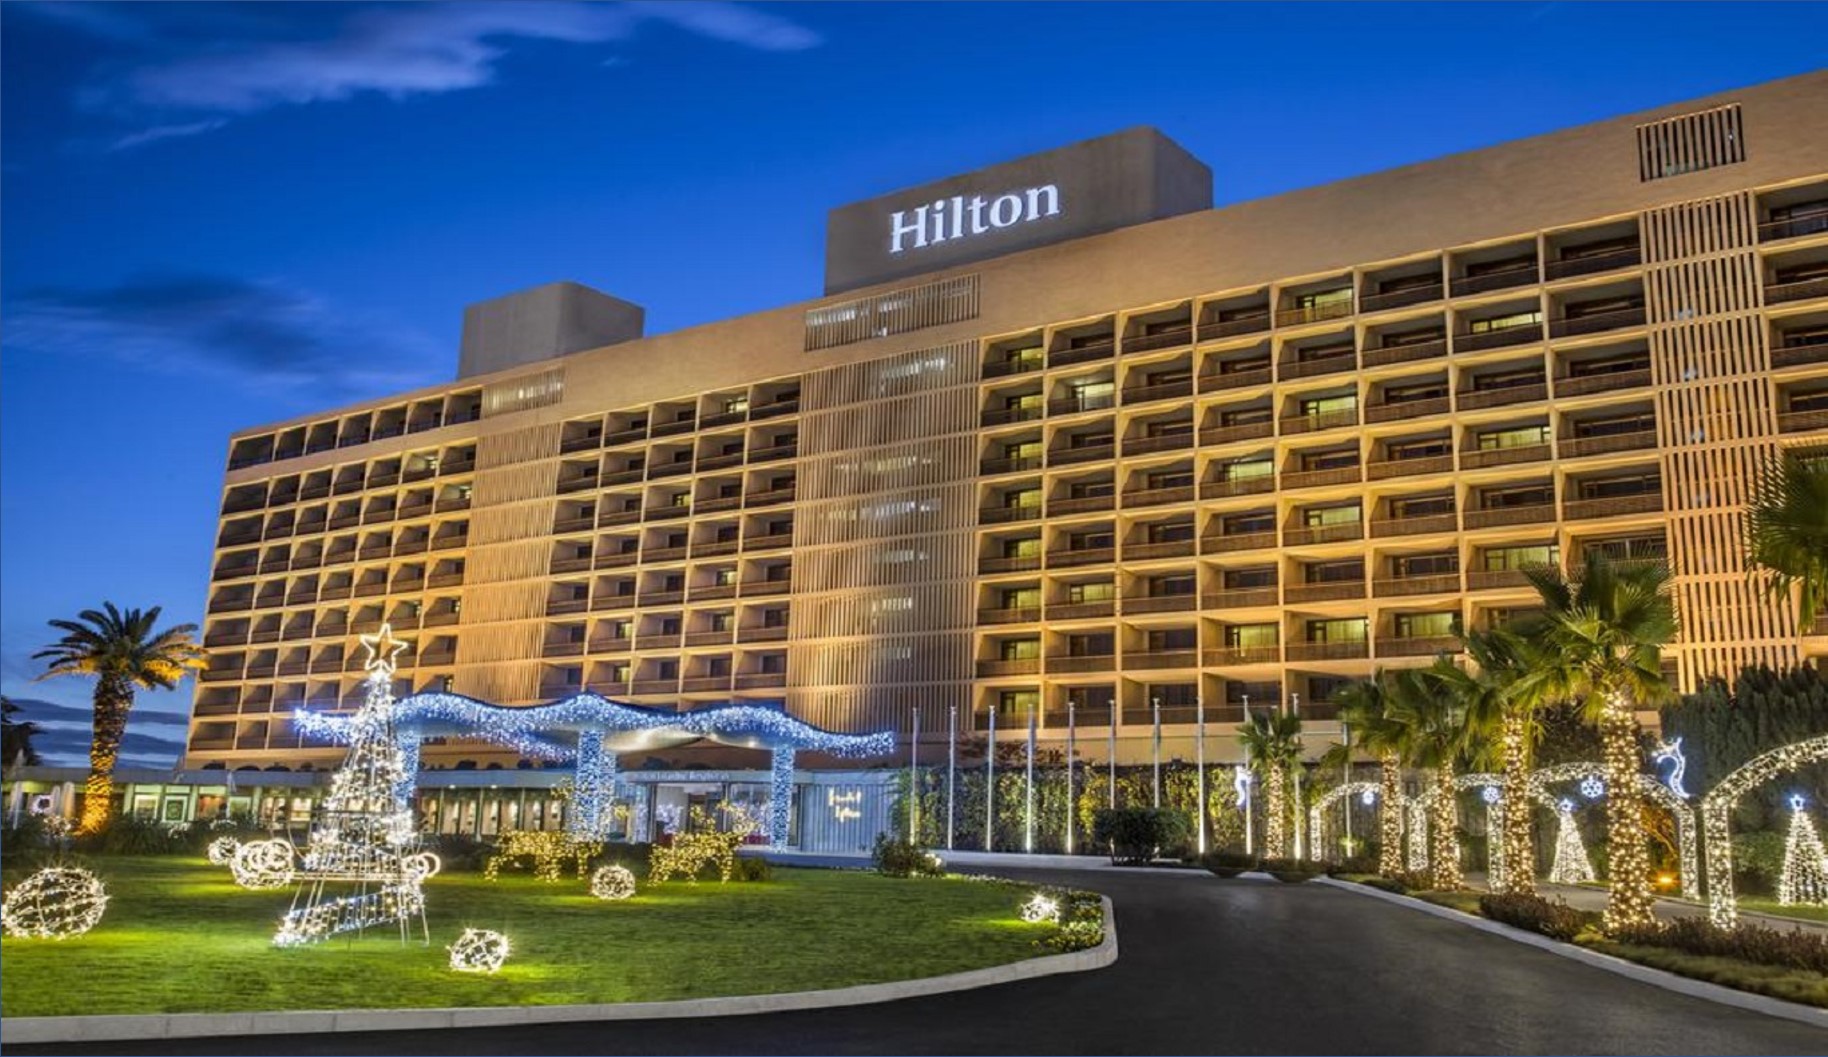 مجموعة فنادق هليتون بالكويت تعلن عن وظائف جديدة